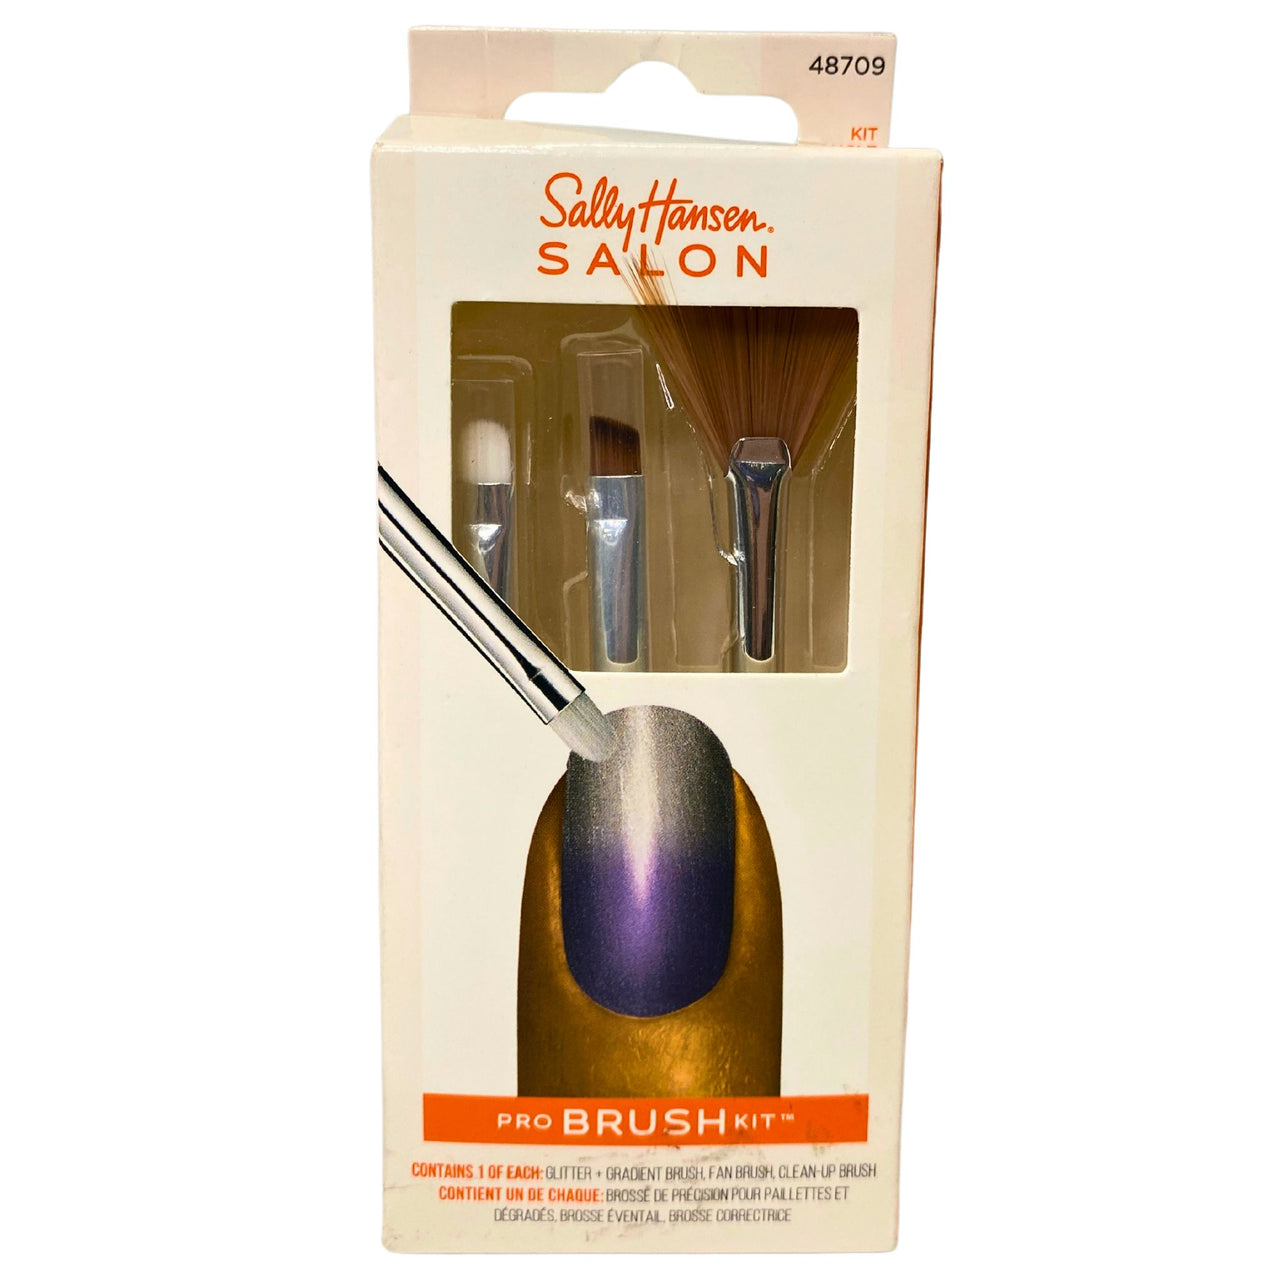 Sally Hansen Salon Pro Brush Kit